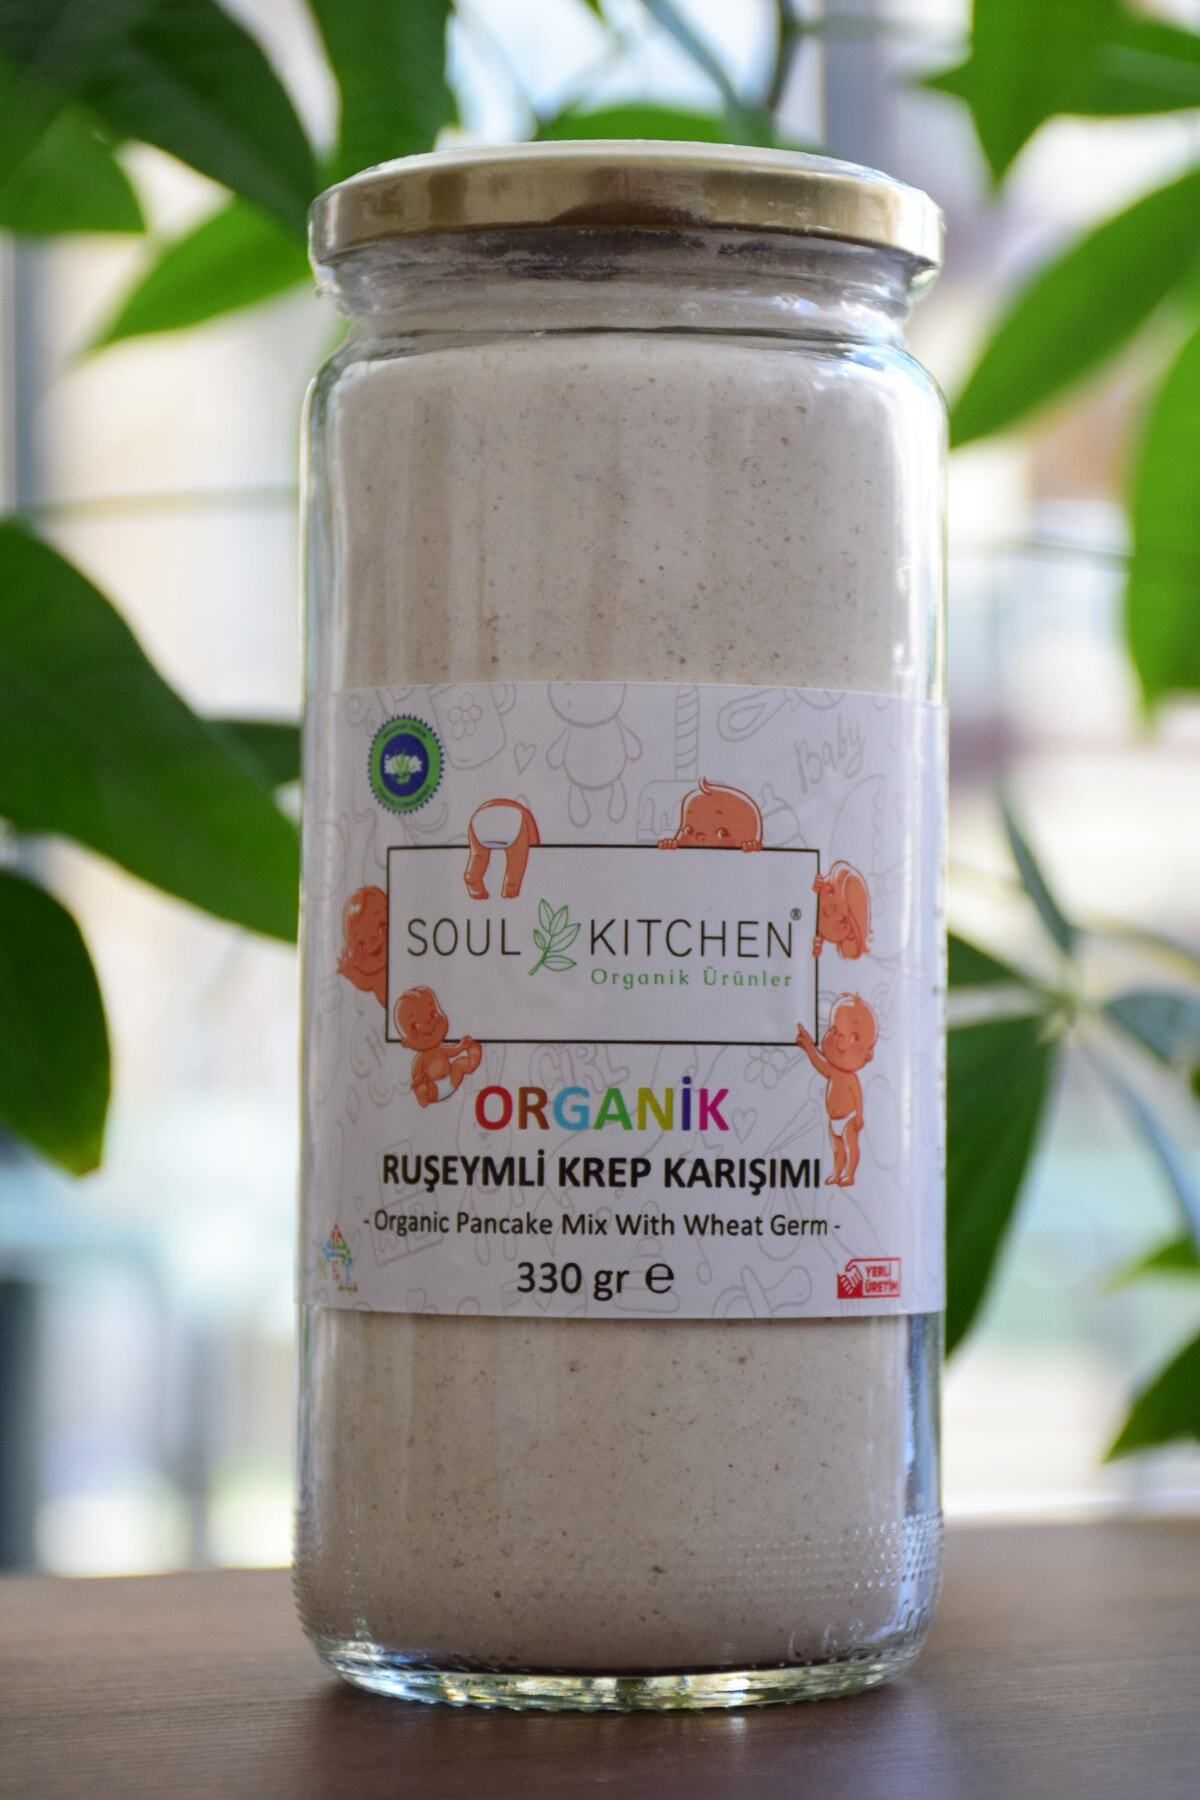 Soul Kitchen Organik Ürünler Organik Bebek Ruşeymli Krep Karışımı 330gr